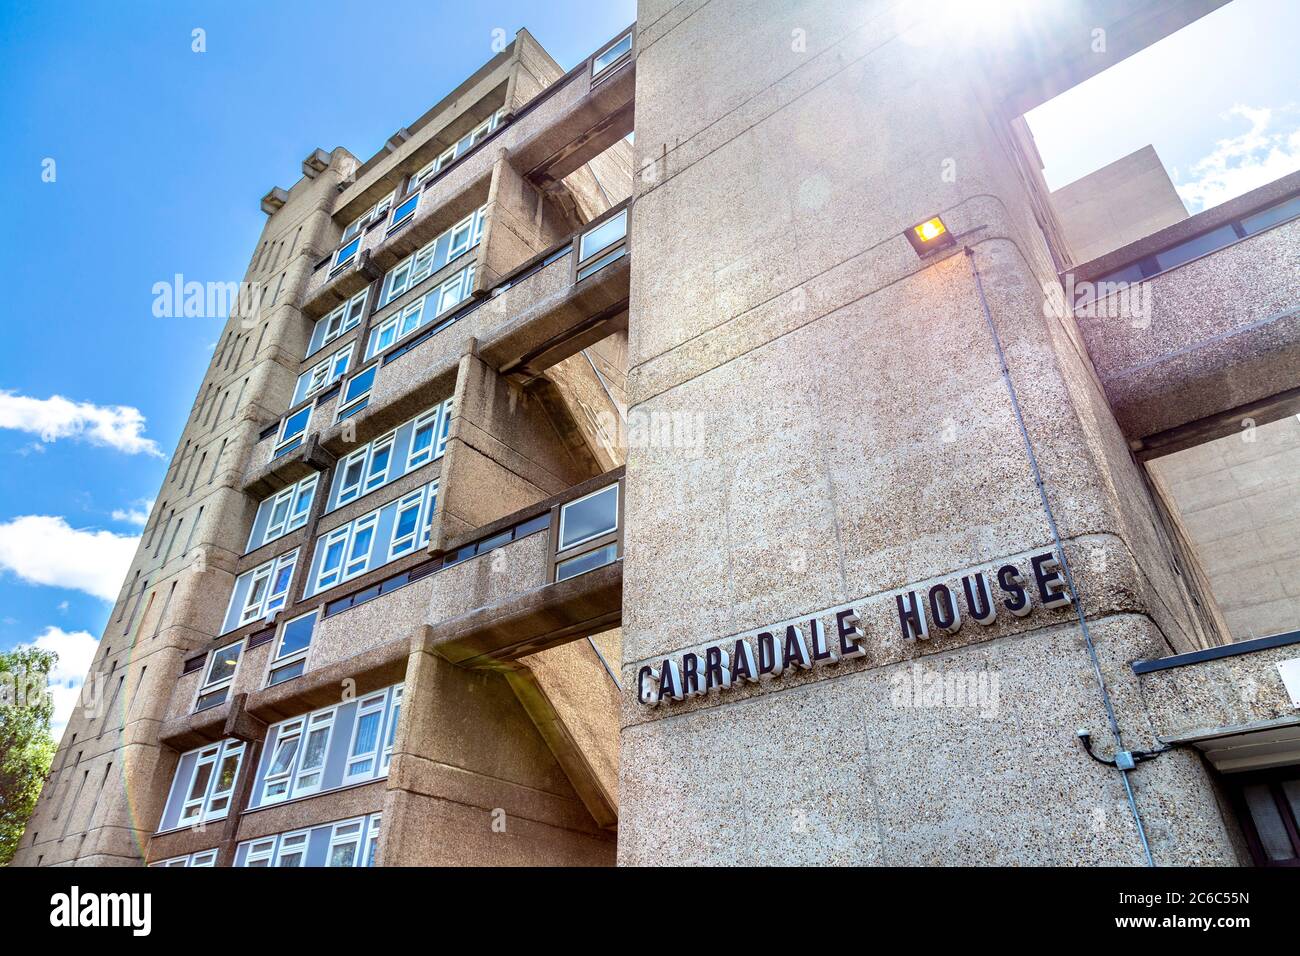 Fachada de estilo brutalista residencial bloque Carradale House en el Brownfield Estate, Londres, Reino Unido Foto de stock